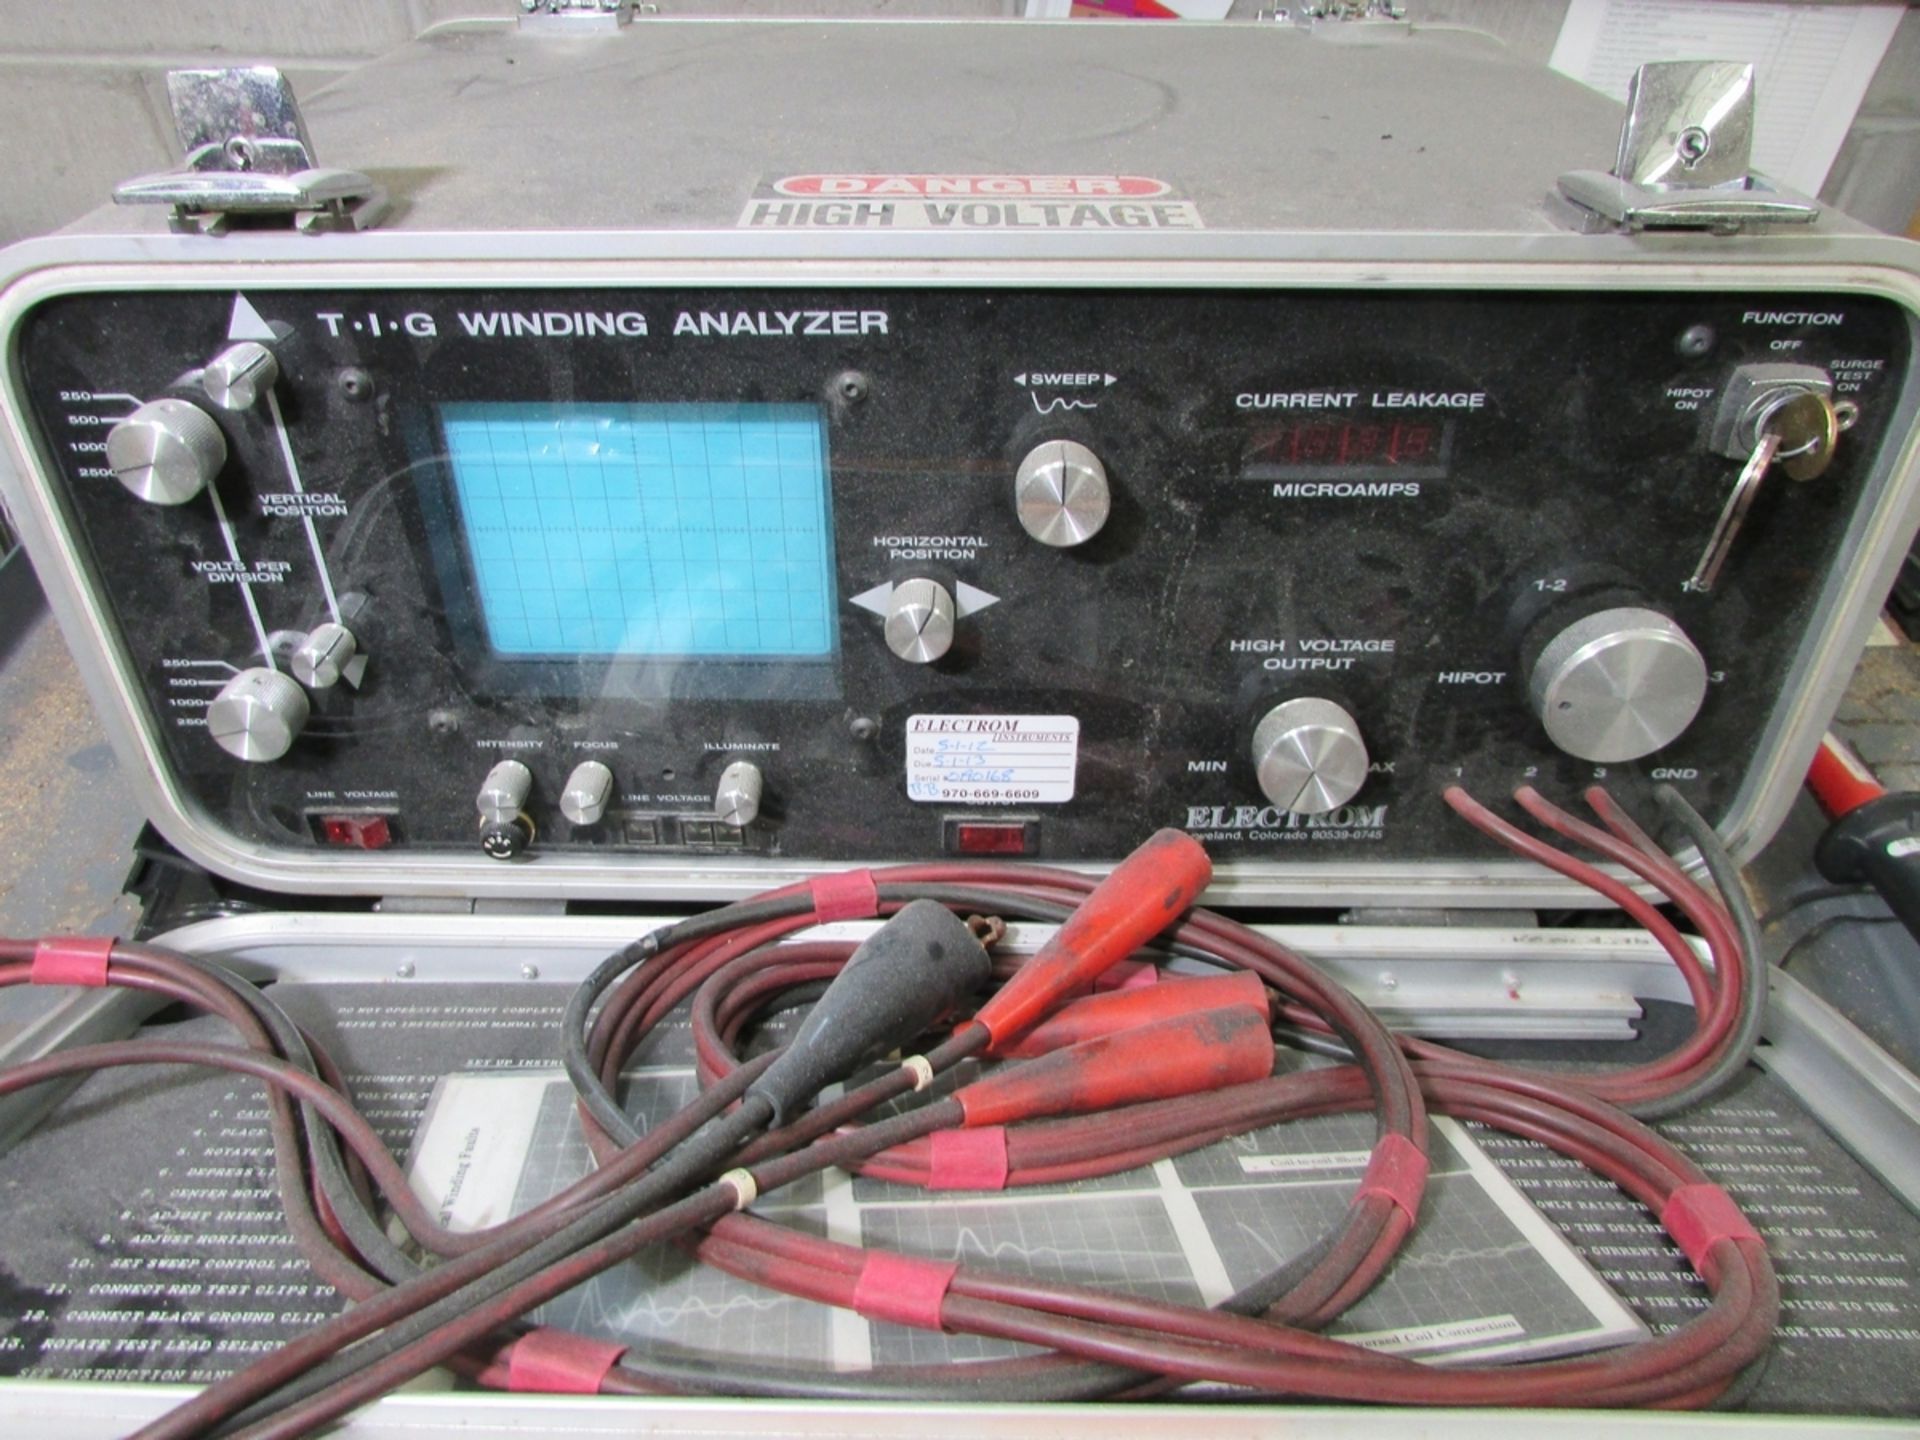 Electrom T.I.G Winding Analyzer - Image 2 of 3